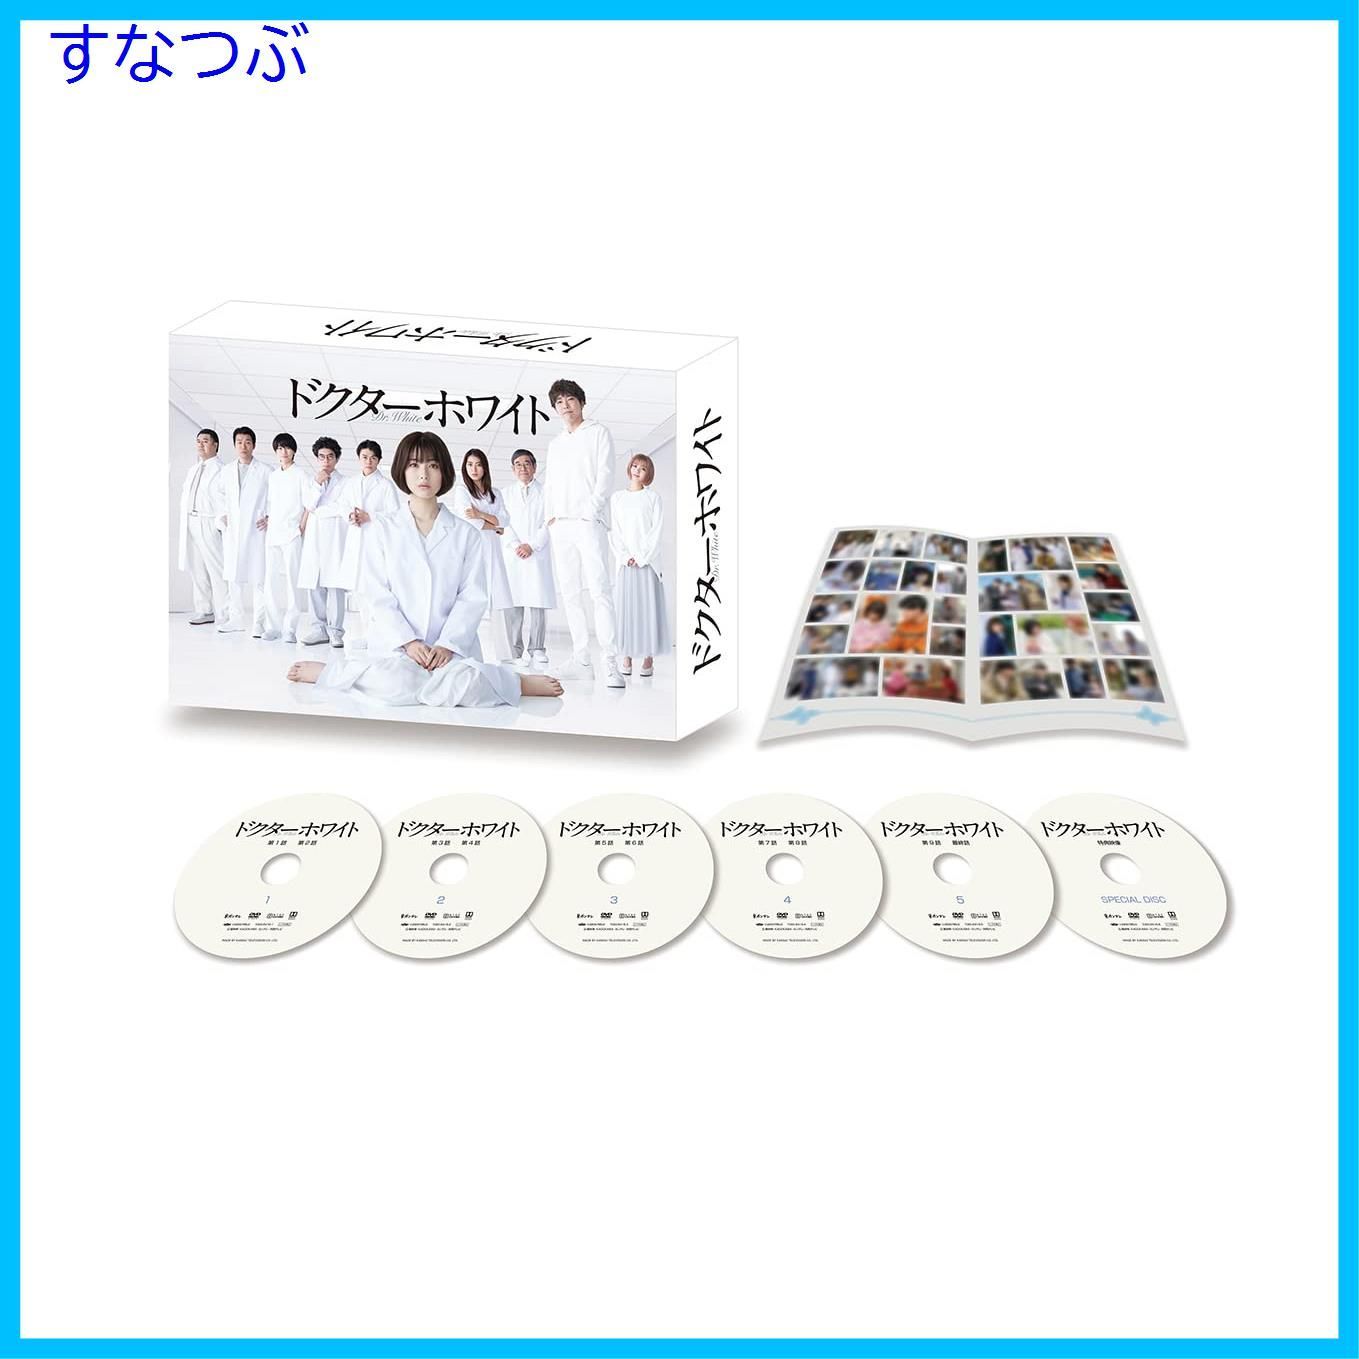 【新品未開封】ドクターホワイト DVD-BOX(L版ブロマイド付) 浜辺美波 (出演) 柄本佑 (出演) 形式: DVD